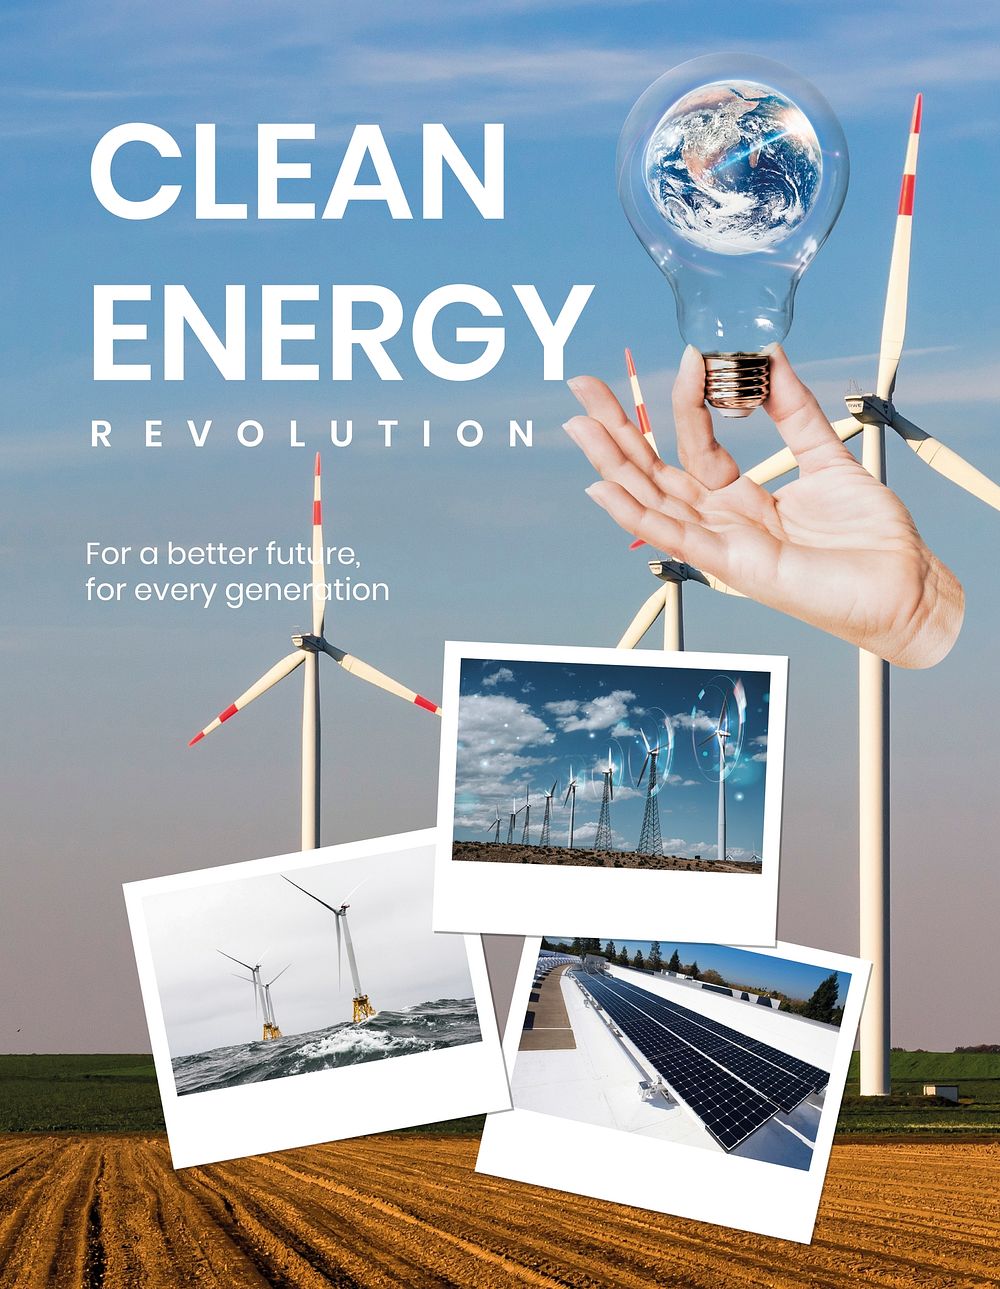 Clean energy flyer template, editable text vector